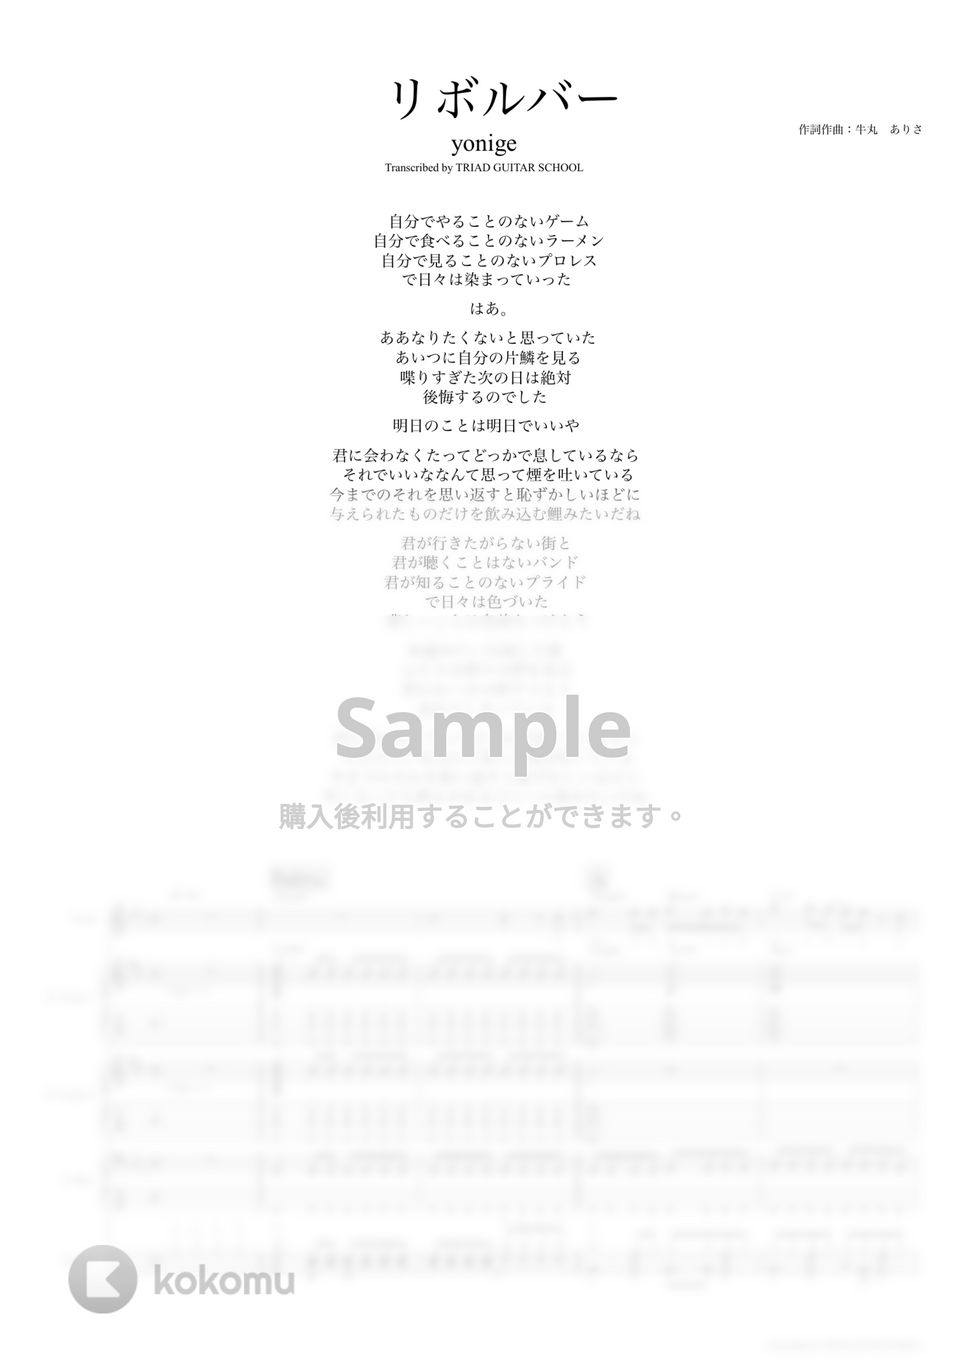 yonige - リボルバー (バンドスコア) by TRIAD GUITAR SCHOOL